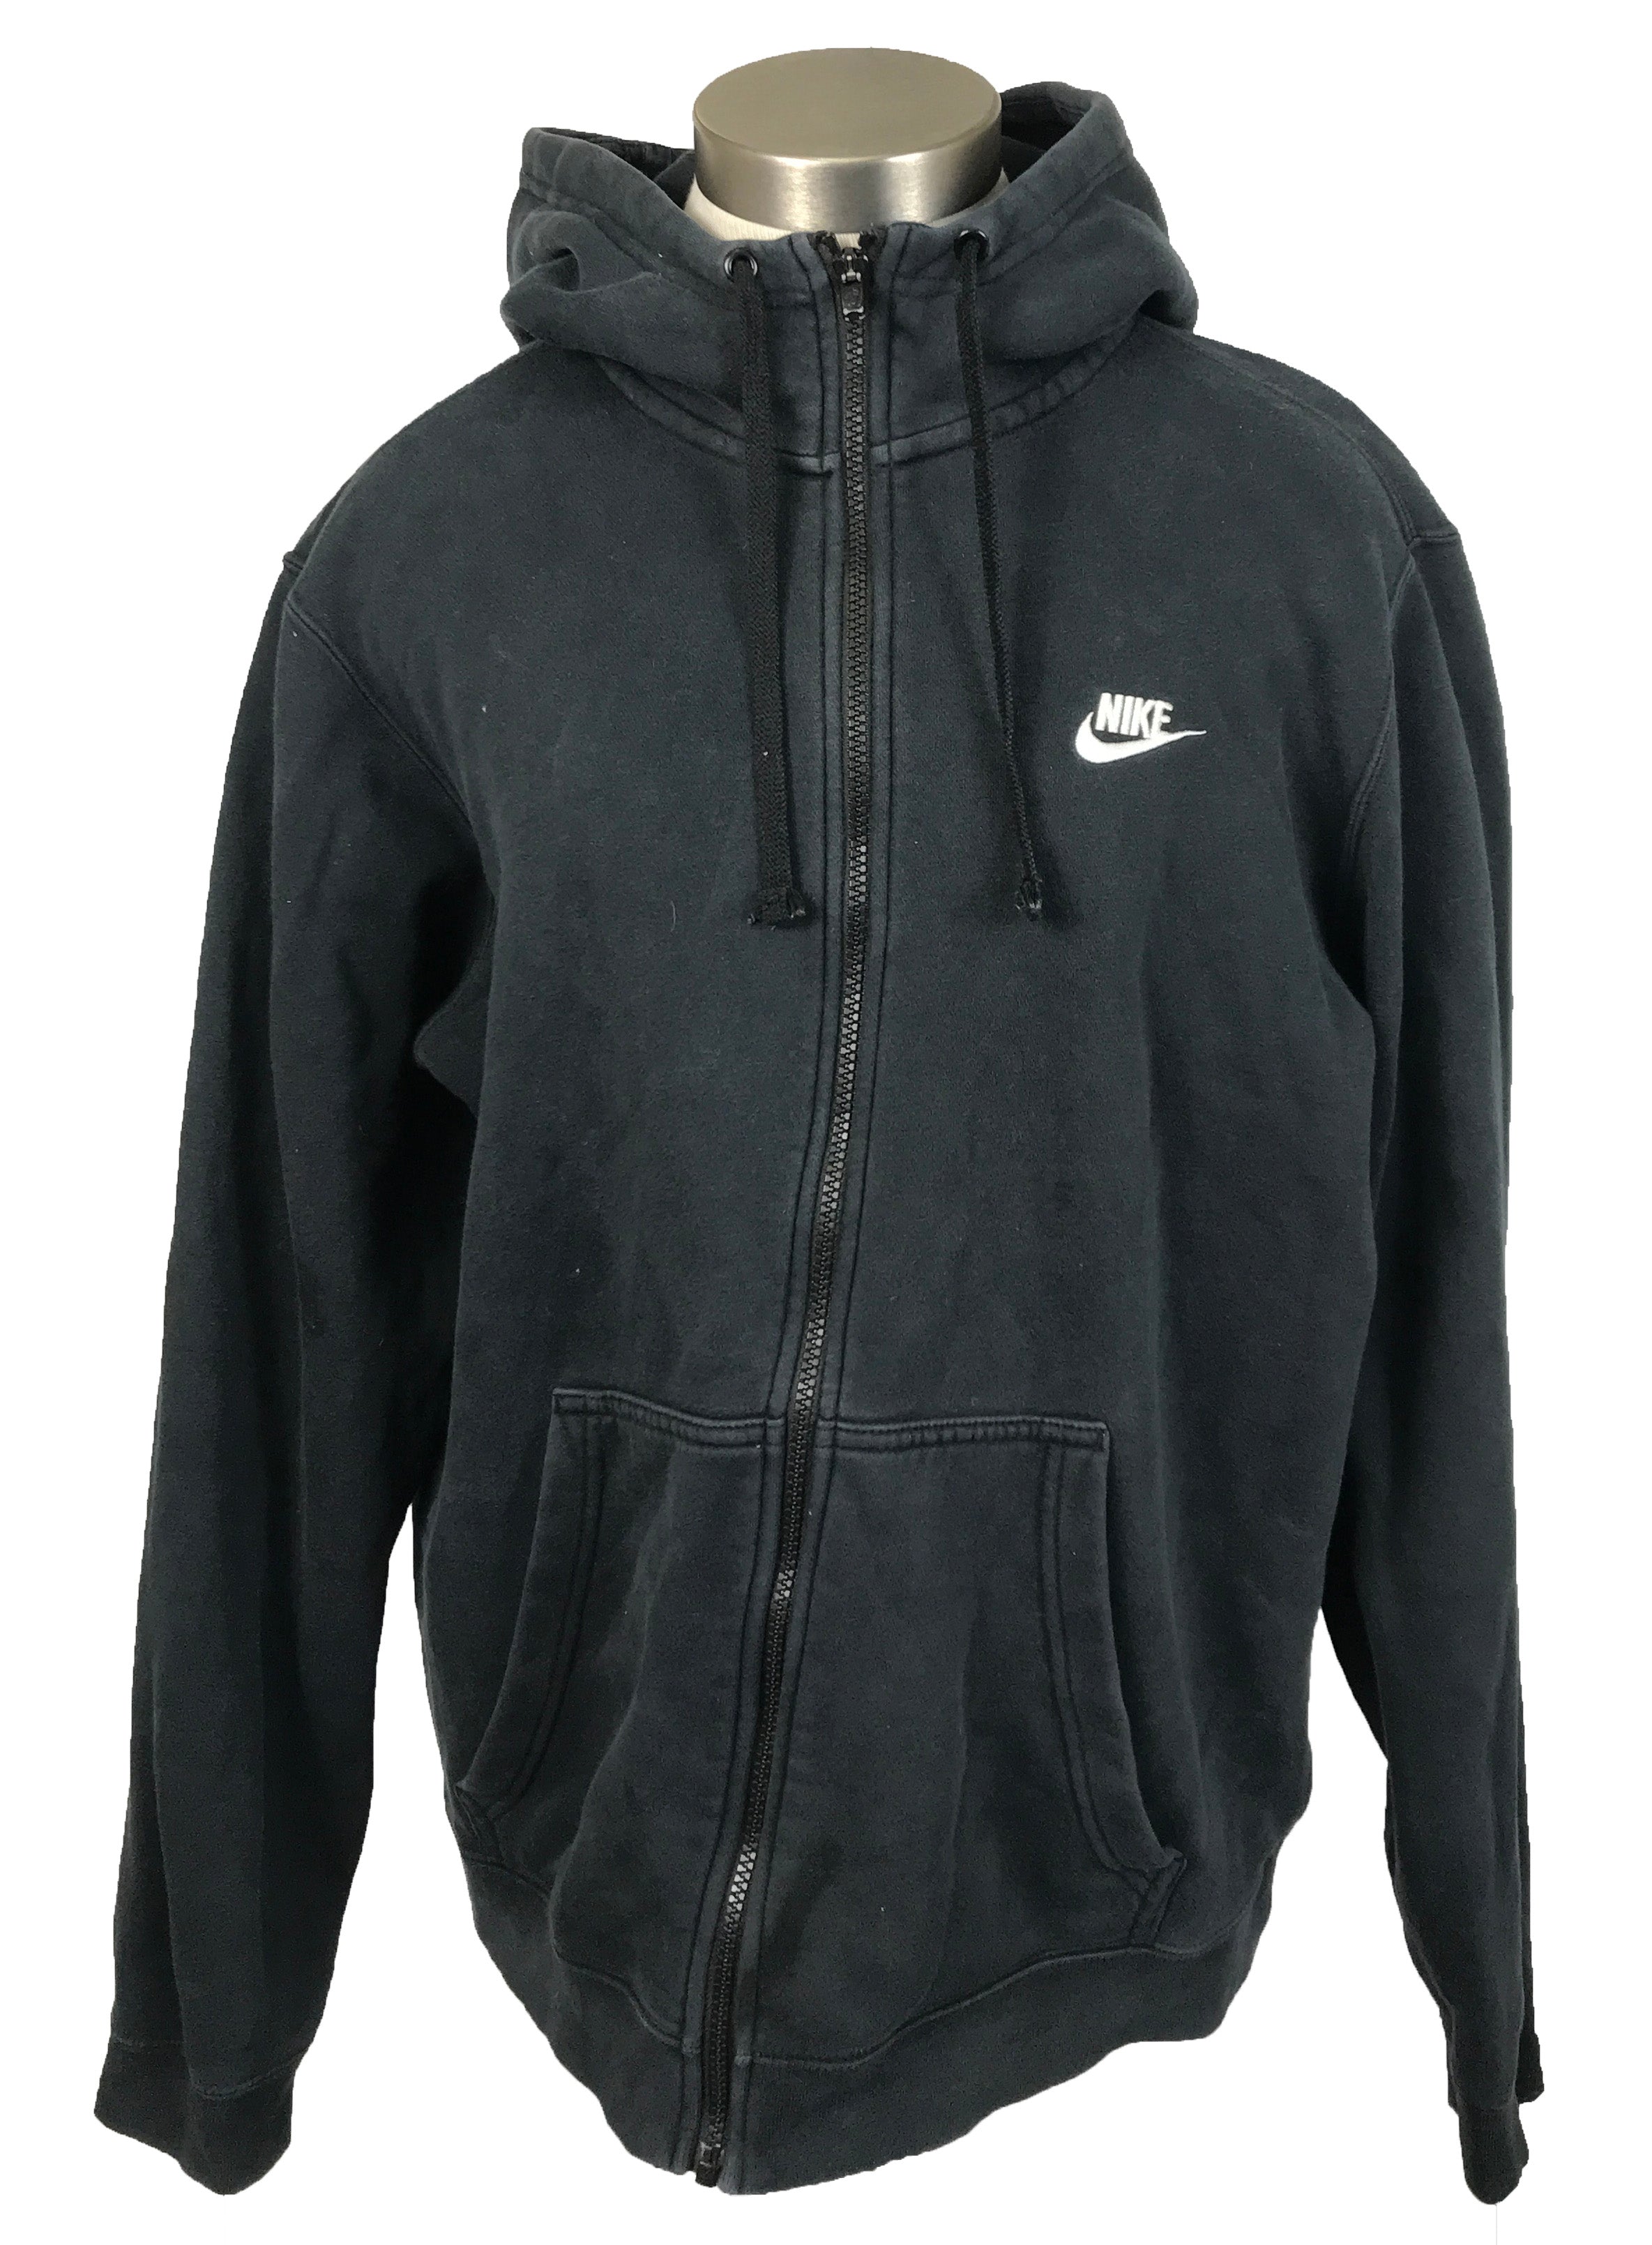 Nike Black Jacket Unisex Size L